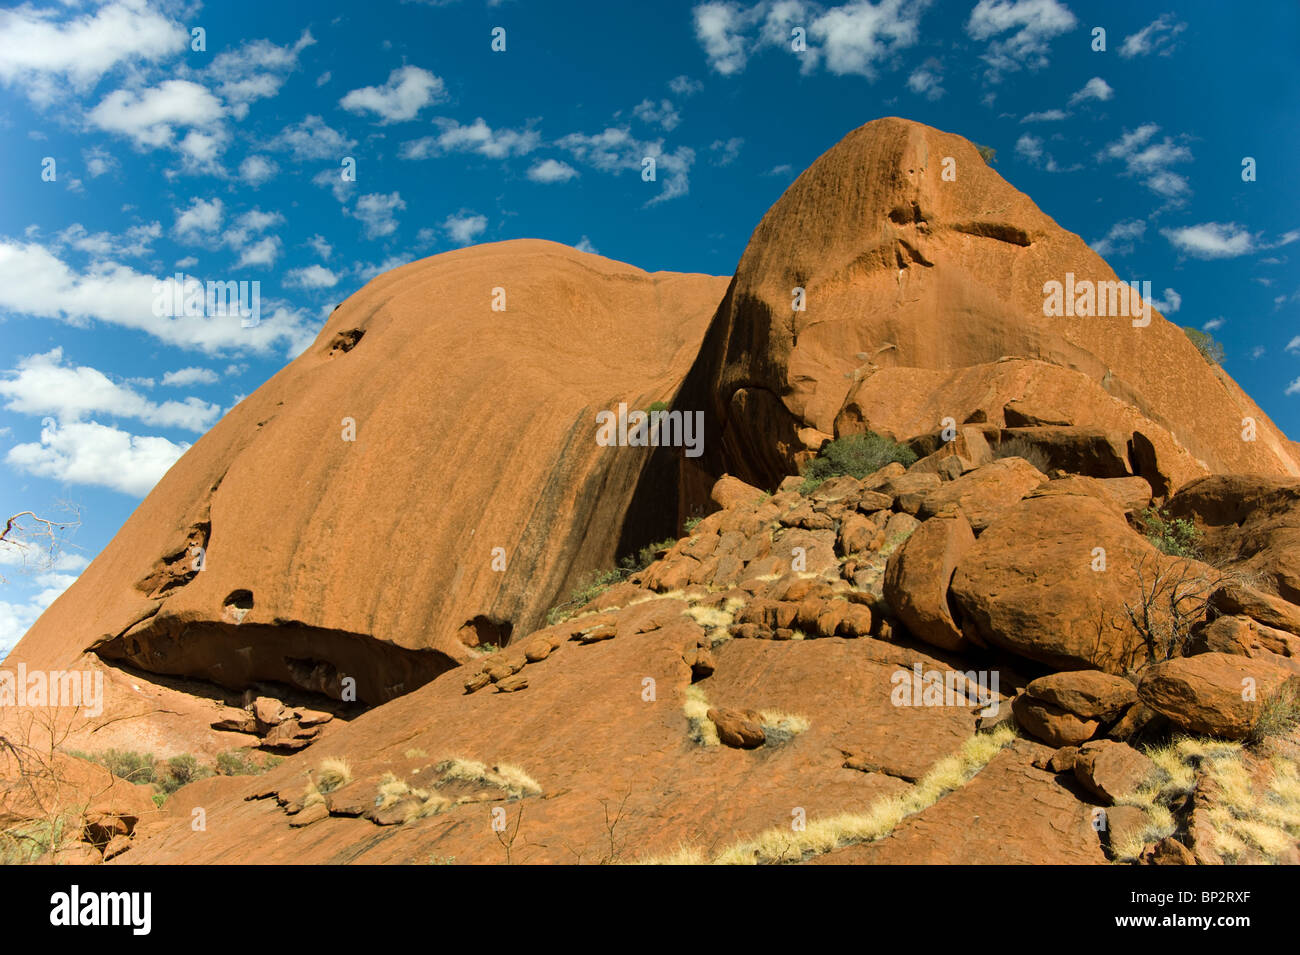 Une partie d'Uluru (Ayers Rock) dans le Territoire du Nord de l'Australie centrale Banque D'Images